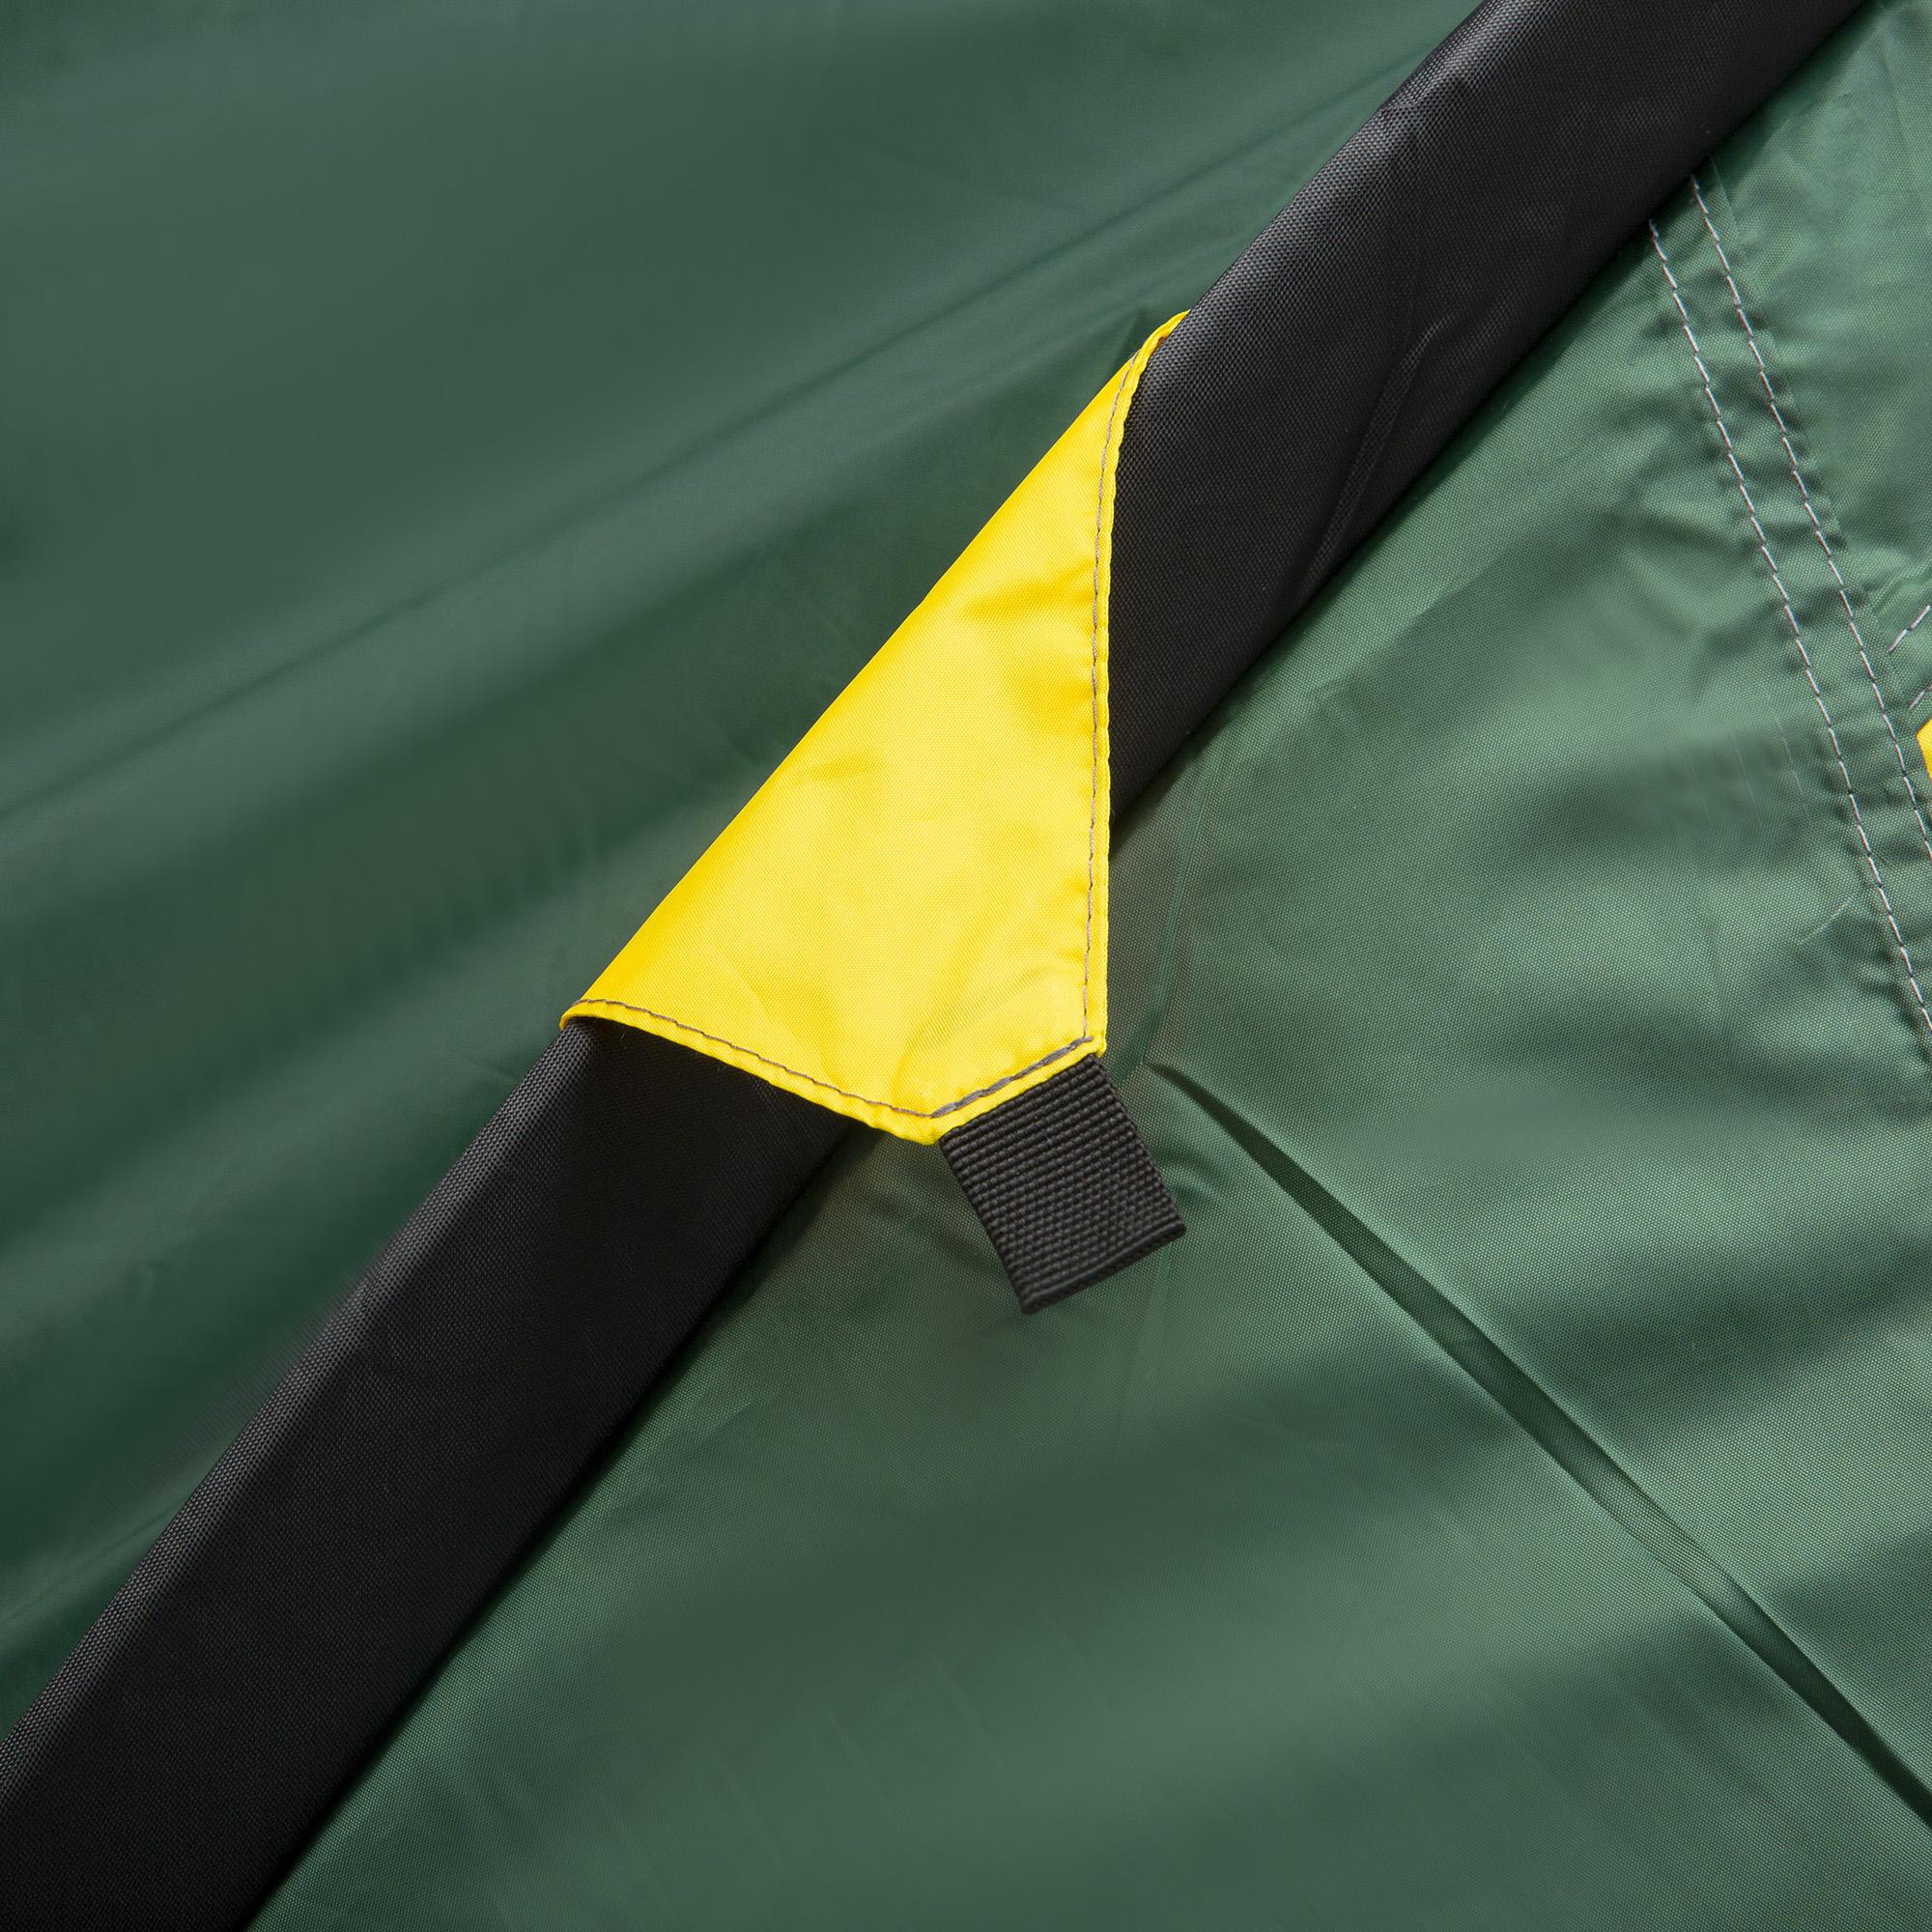 Outsunny Tente de camping 2 personnes camouflage avec portes zippées, poche  de rangement sac de transport inclus - fibre verre polyester tissu Oxford  dim. 206L x 152l x 110H cm